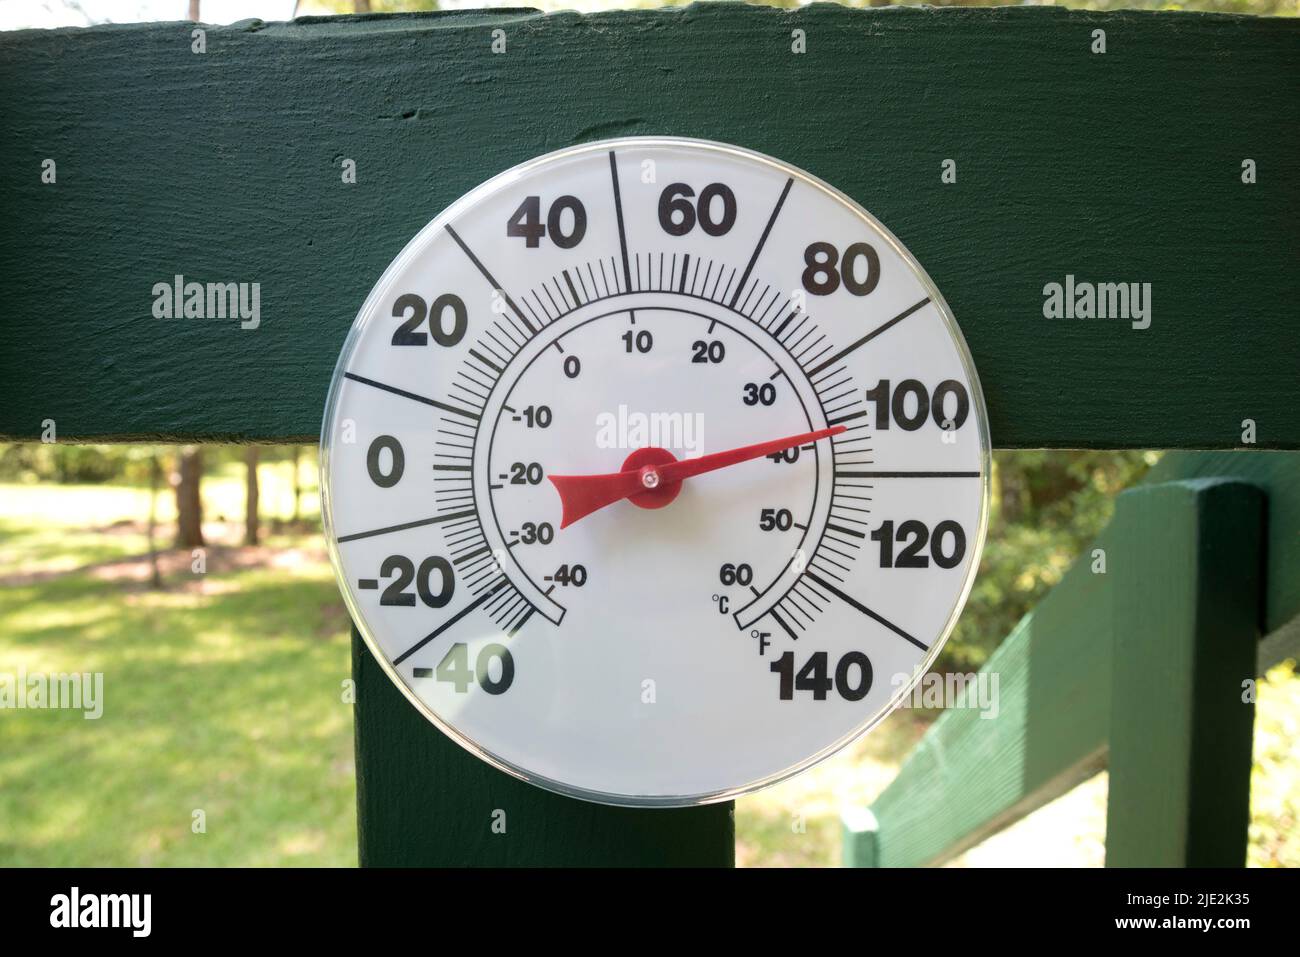 Über 100-Grad-Tag in North Central Florida während rekordbrechender Hitzewelle... (OHNE LOGO AUF TEMP-ANZEIGE) Stockfoto